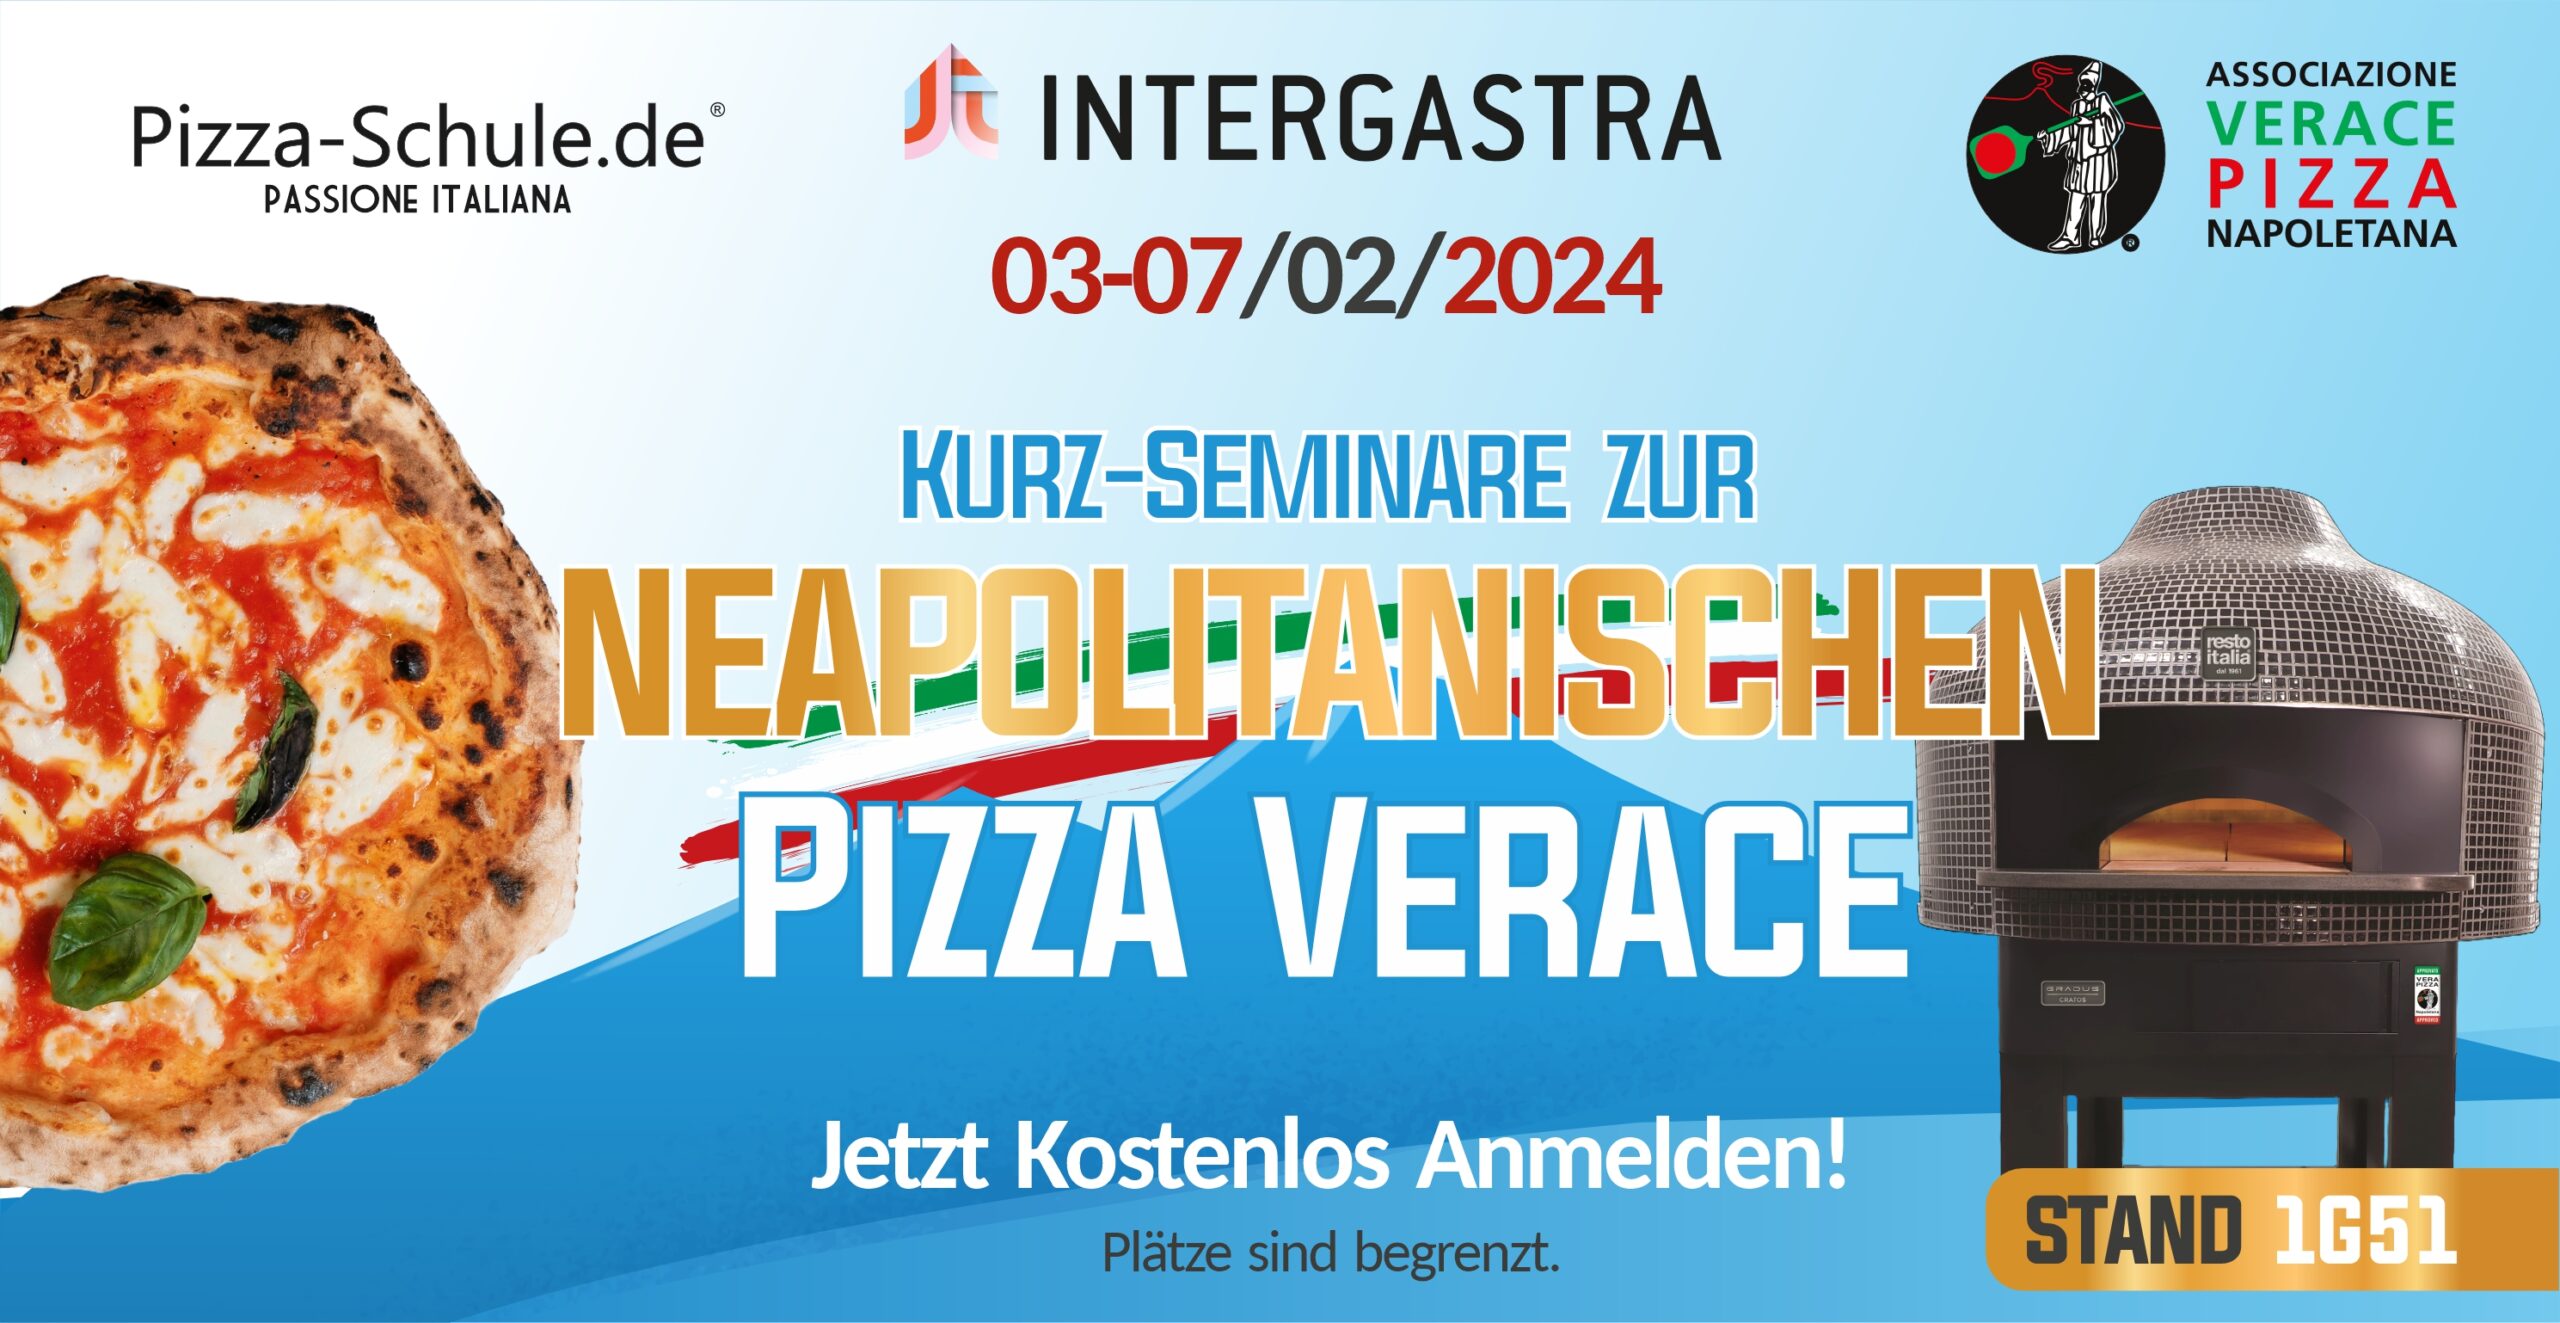 Kurz-Seminare zur neapolitanischen Pizza Verace